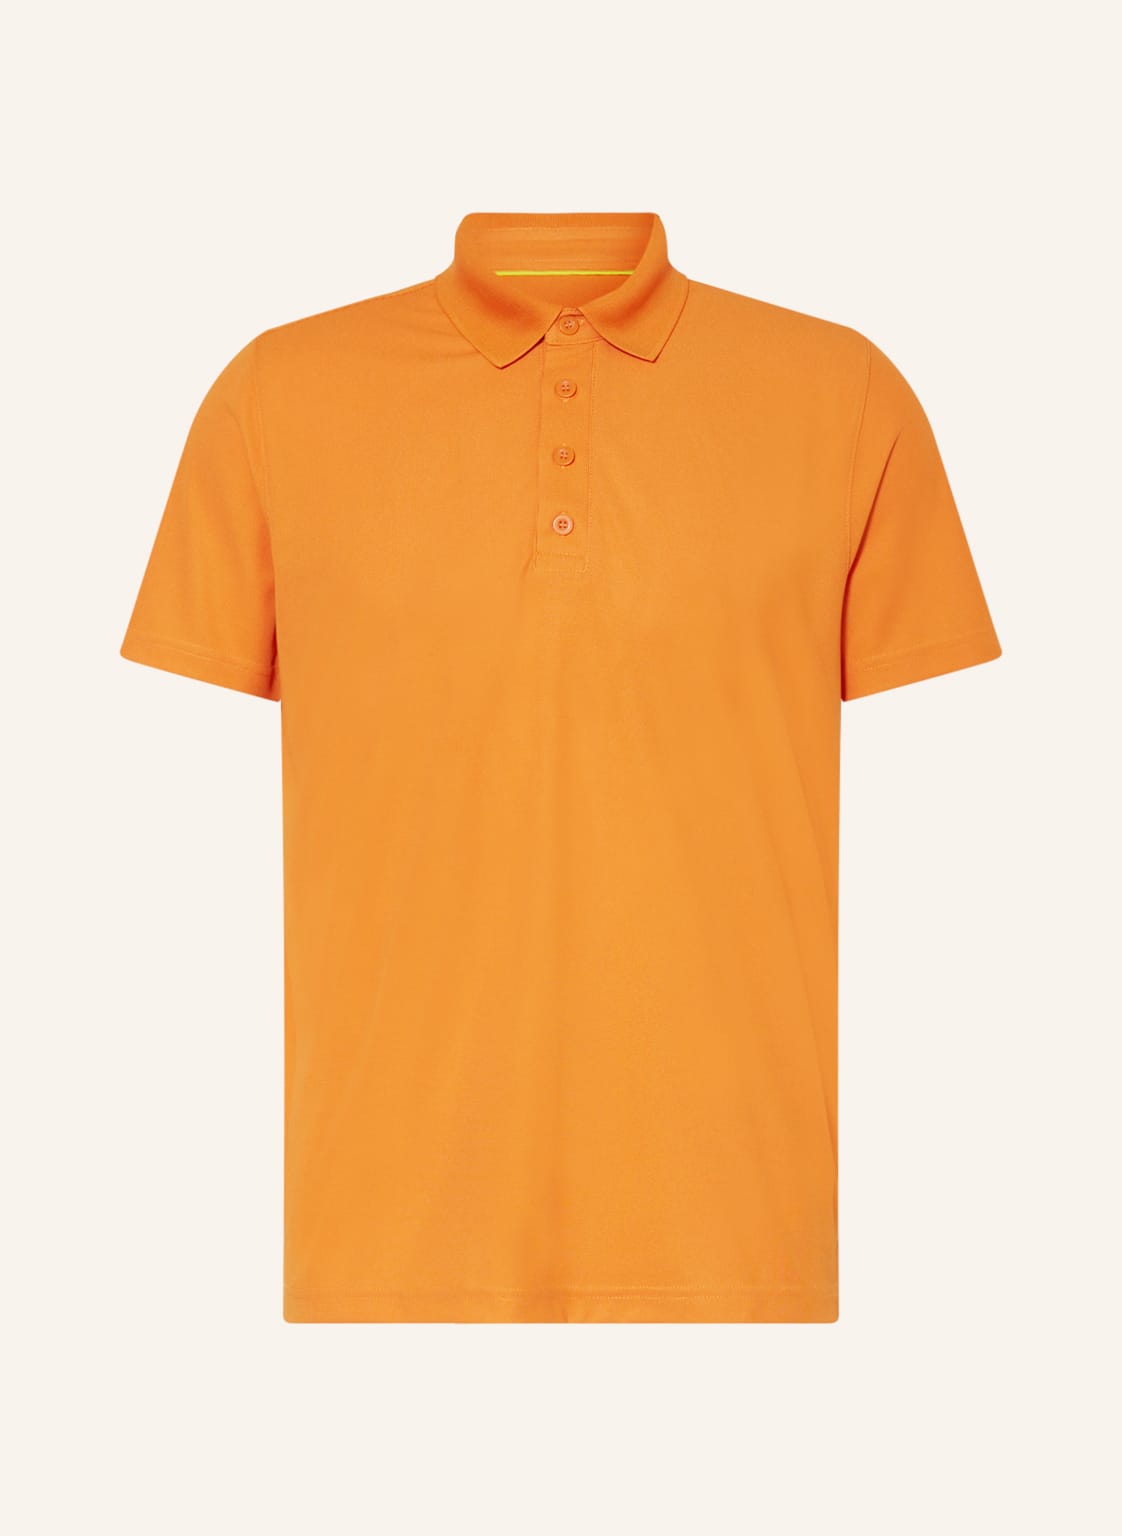 Me°Ru' Funktions-Poloshirt Bristol orange von me°ru'